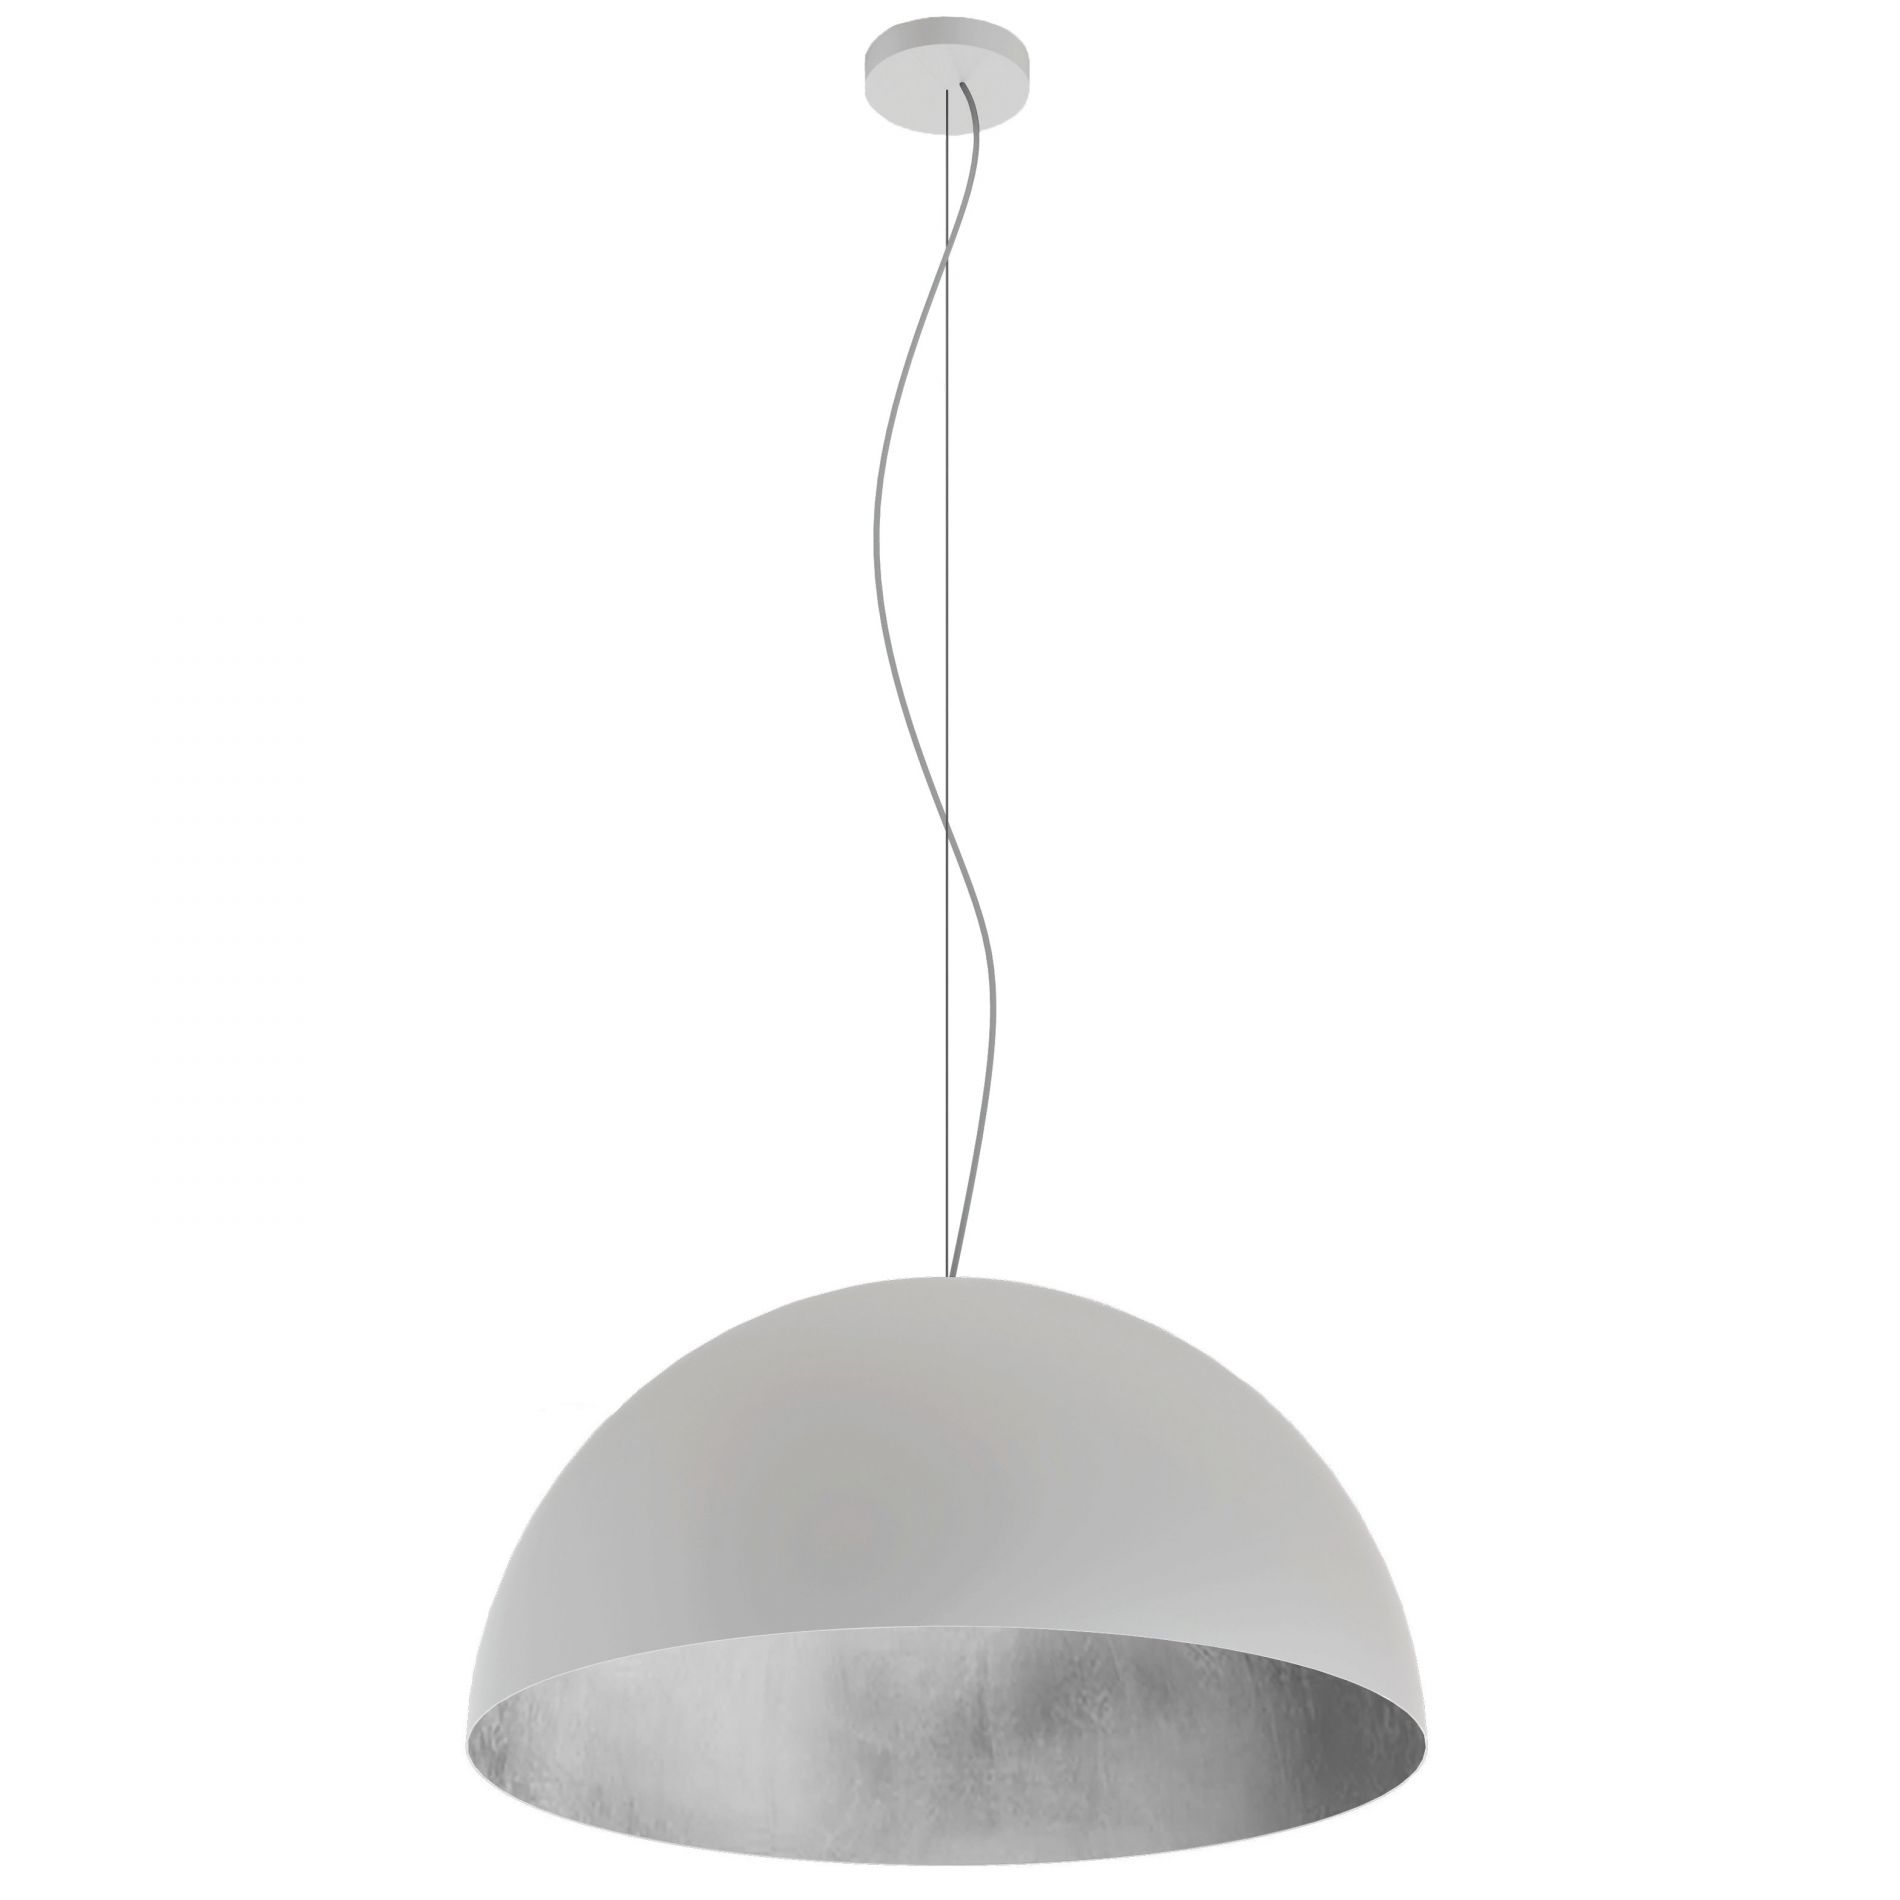 BEL-ART S.A. - Socquet en métal blanc avec lampe croix LED E27